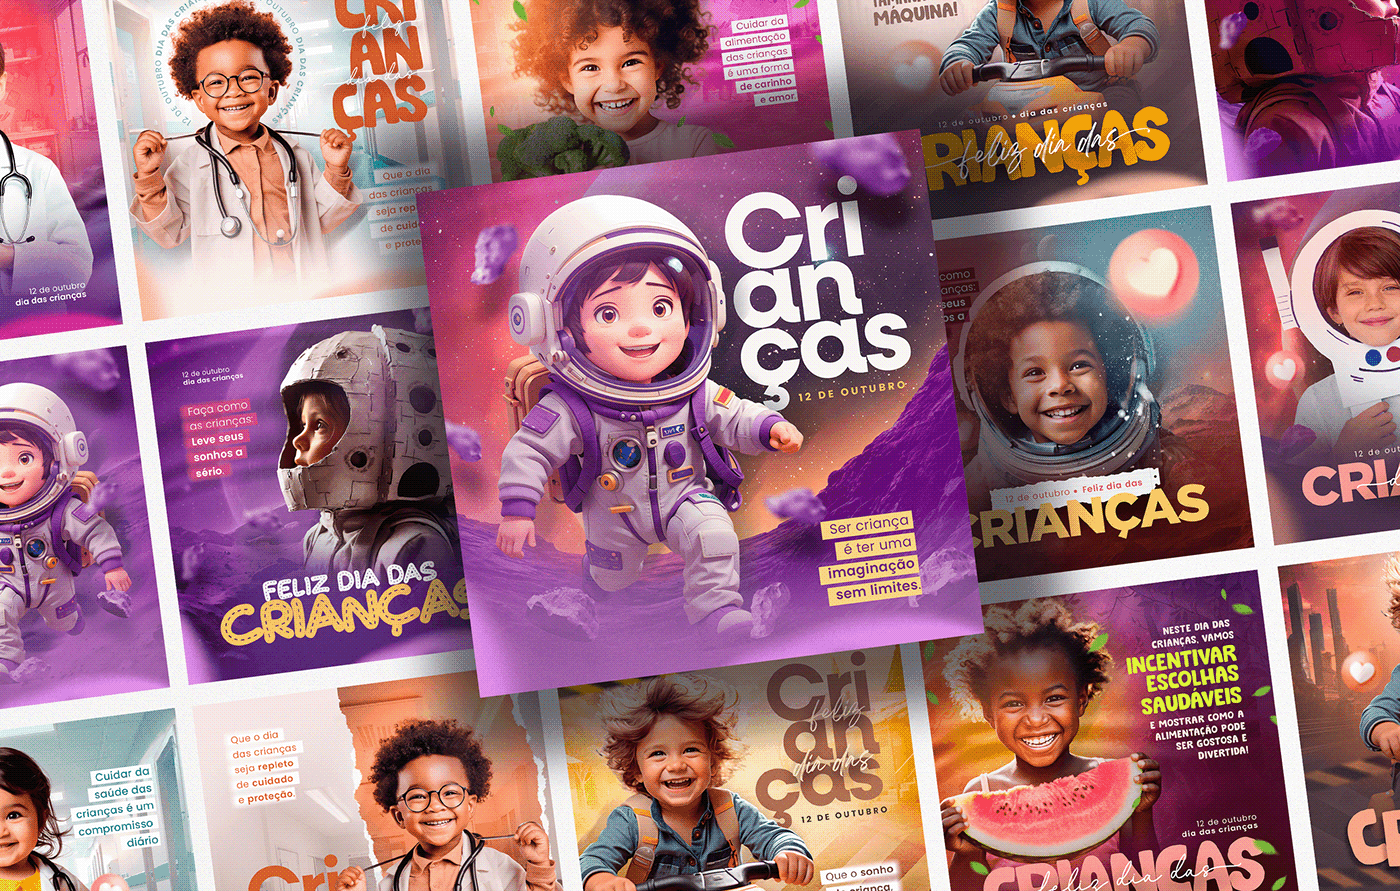 Dia das Crianças social media kids Crianças October 12th Children’s Day Social media post Advertising  graphic design  design